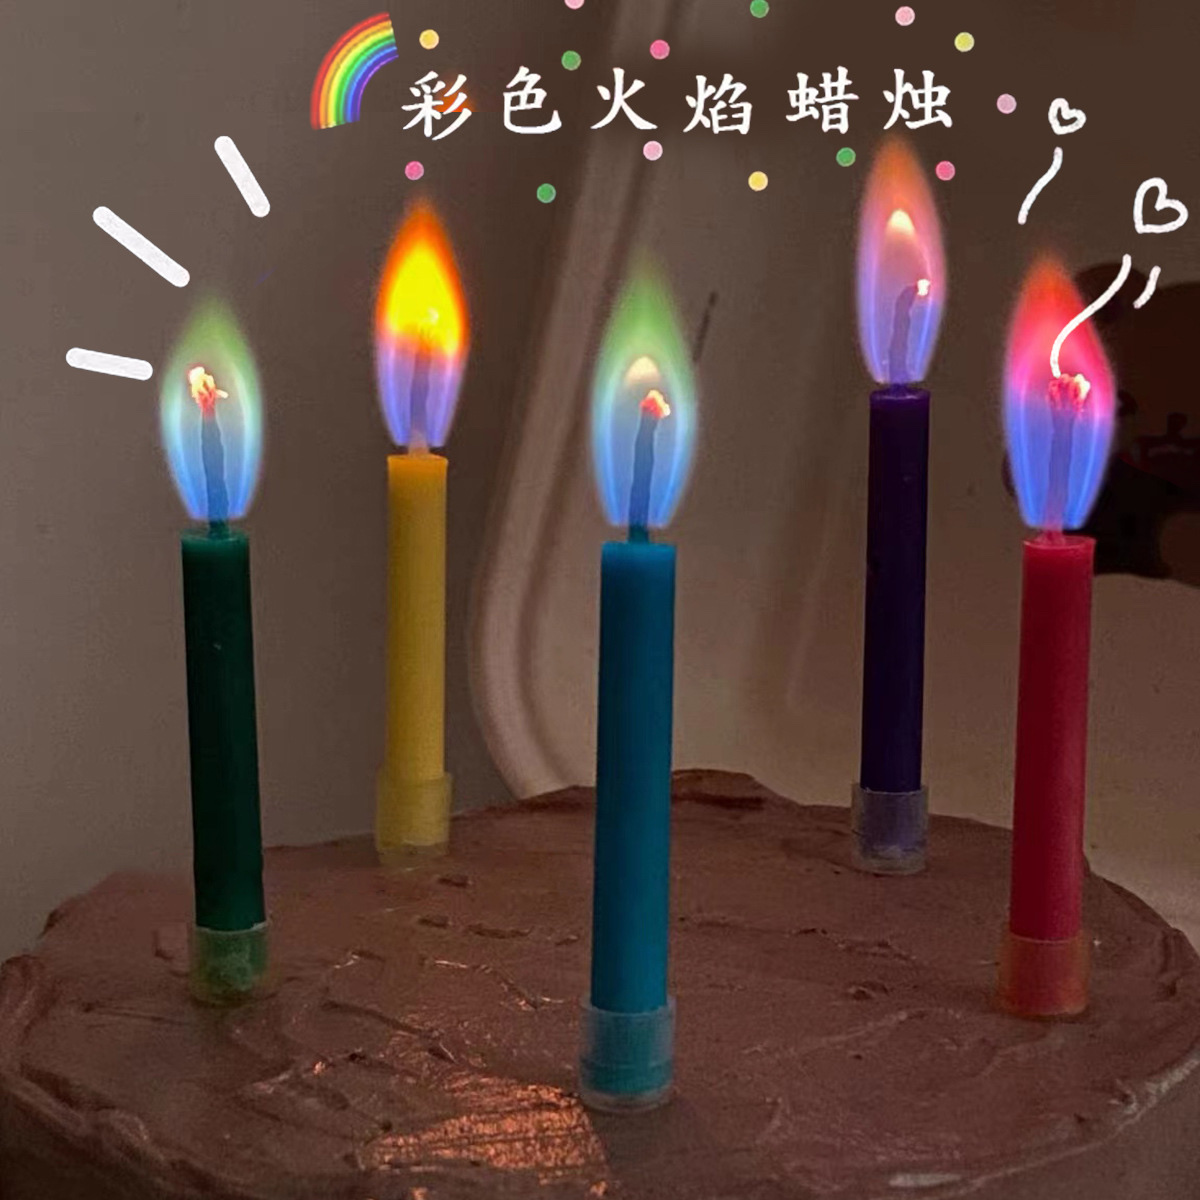 生日蜡烛/蜡烛/杆蜡细节图